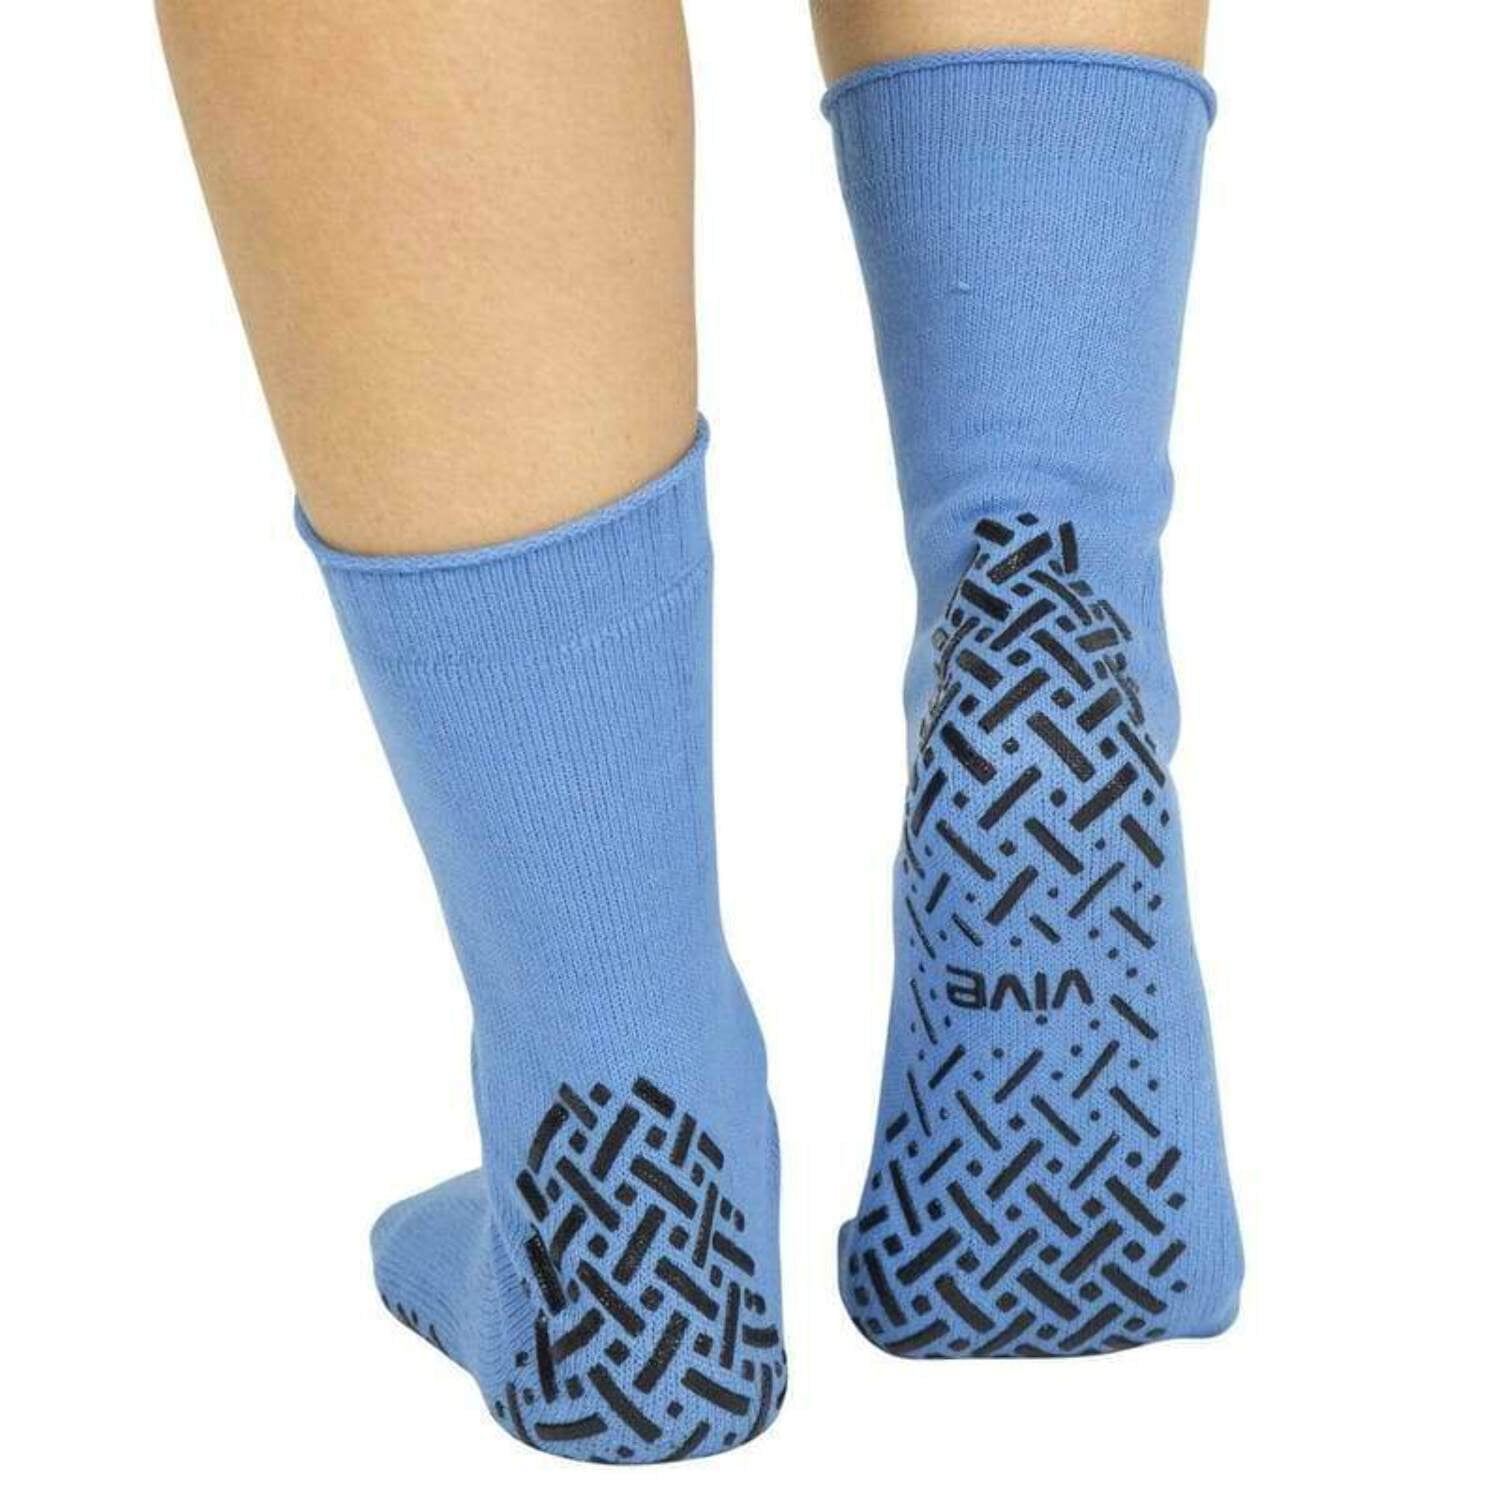 Vive Non-Slip Grip Socks (6 Pairs) - Slipper Socks for Women, Men